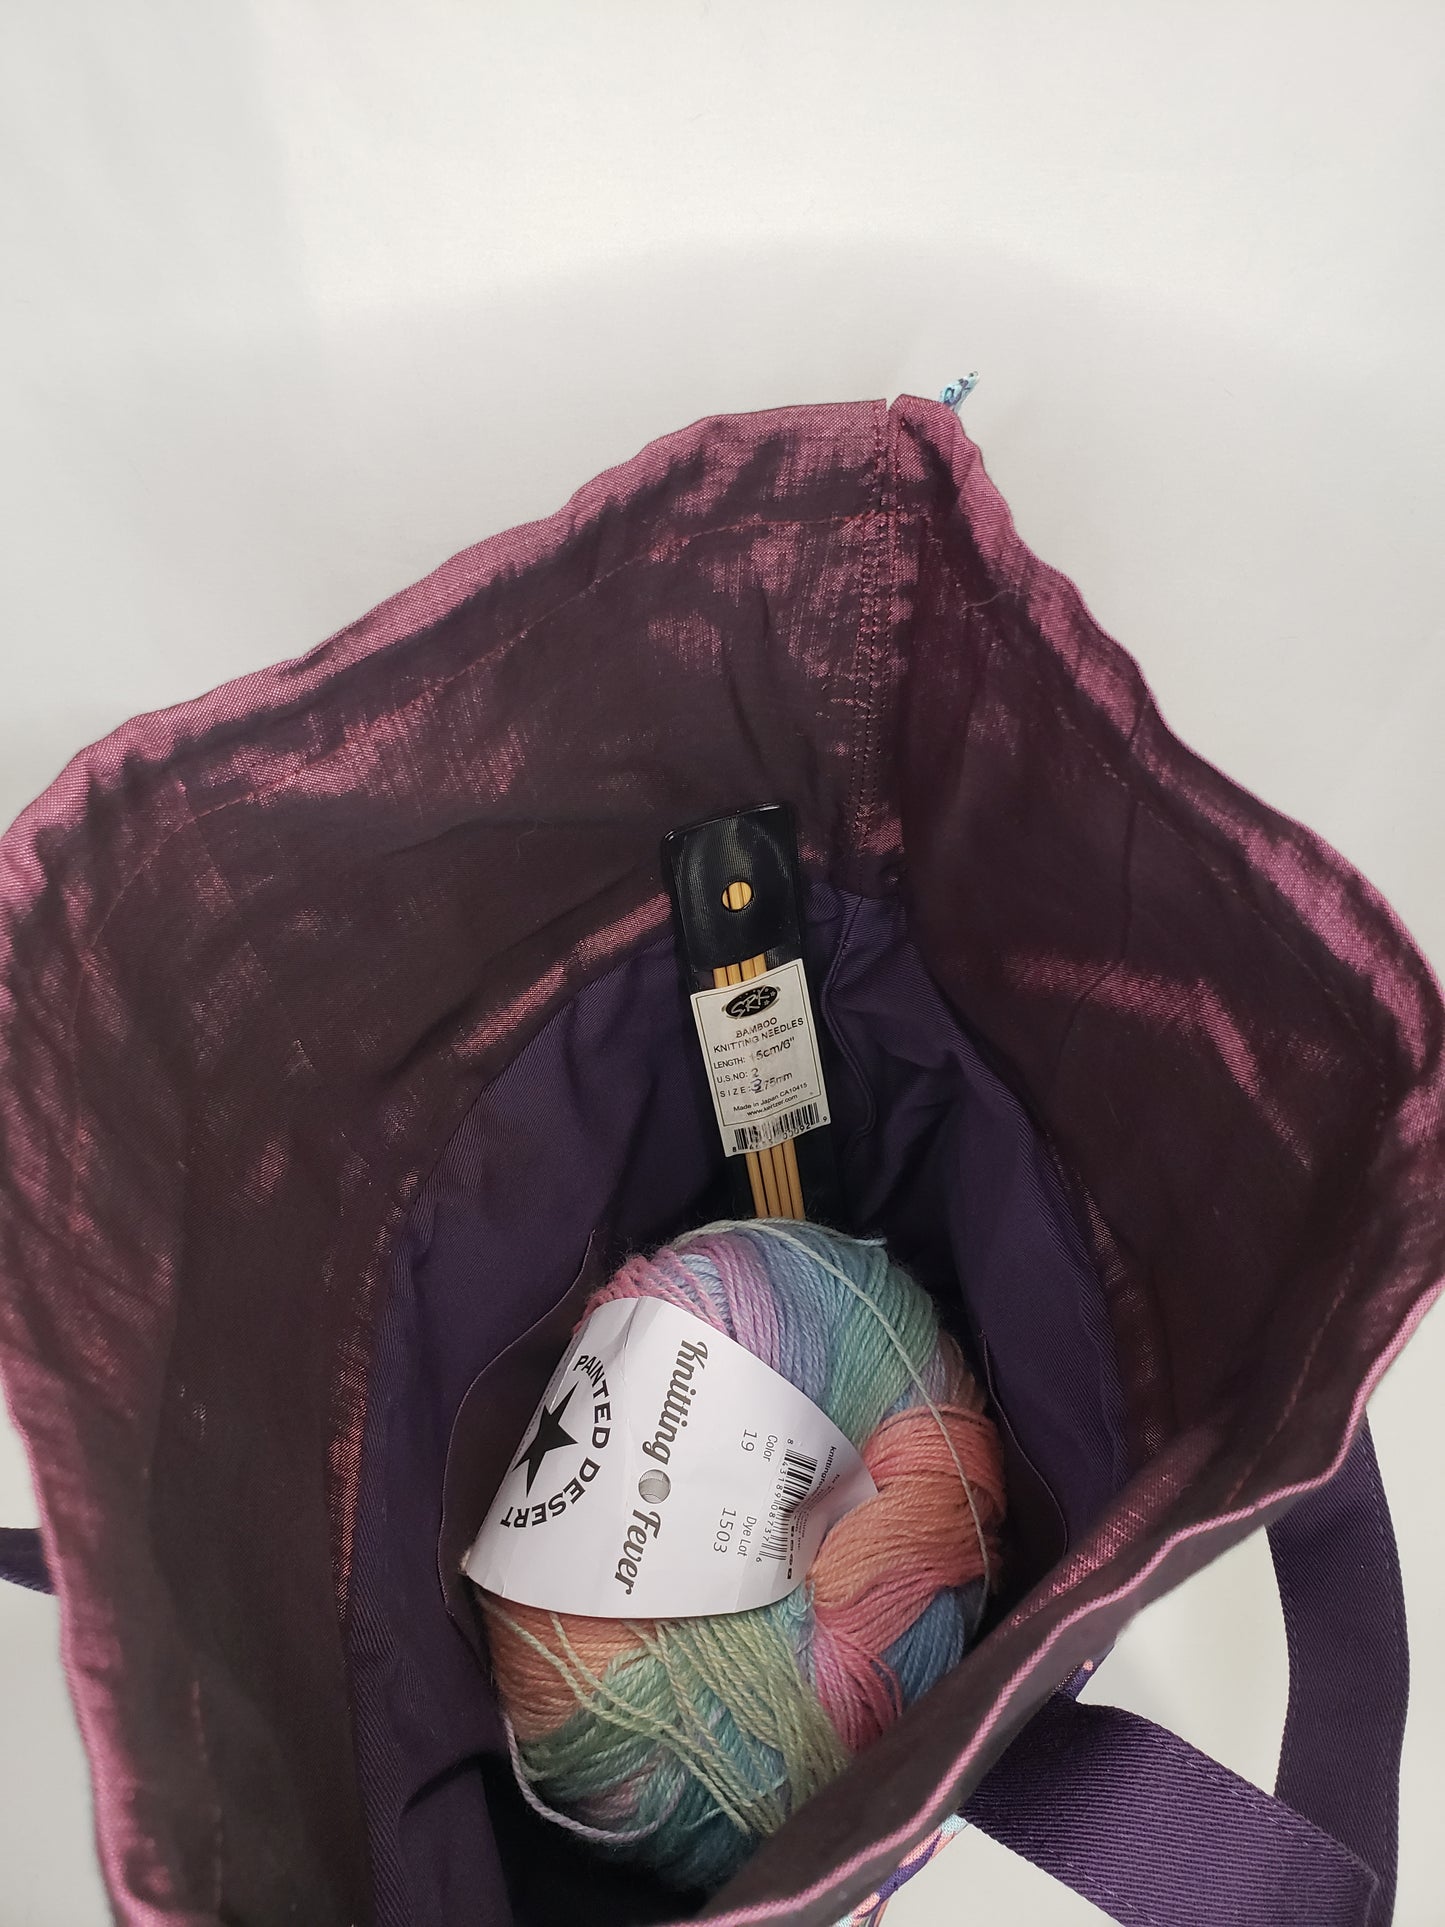 Drawstring project bag, Alpaca Project bag, Purple Project Bag, Purple Drawstring Bag, Purple Knitting bag, Purple Crochet bag